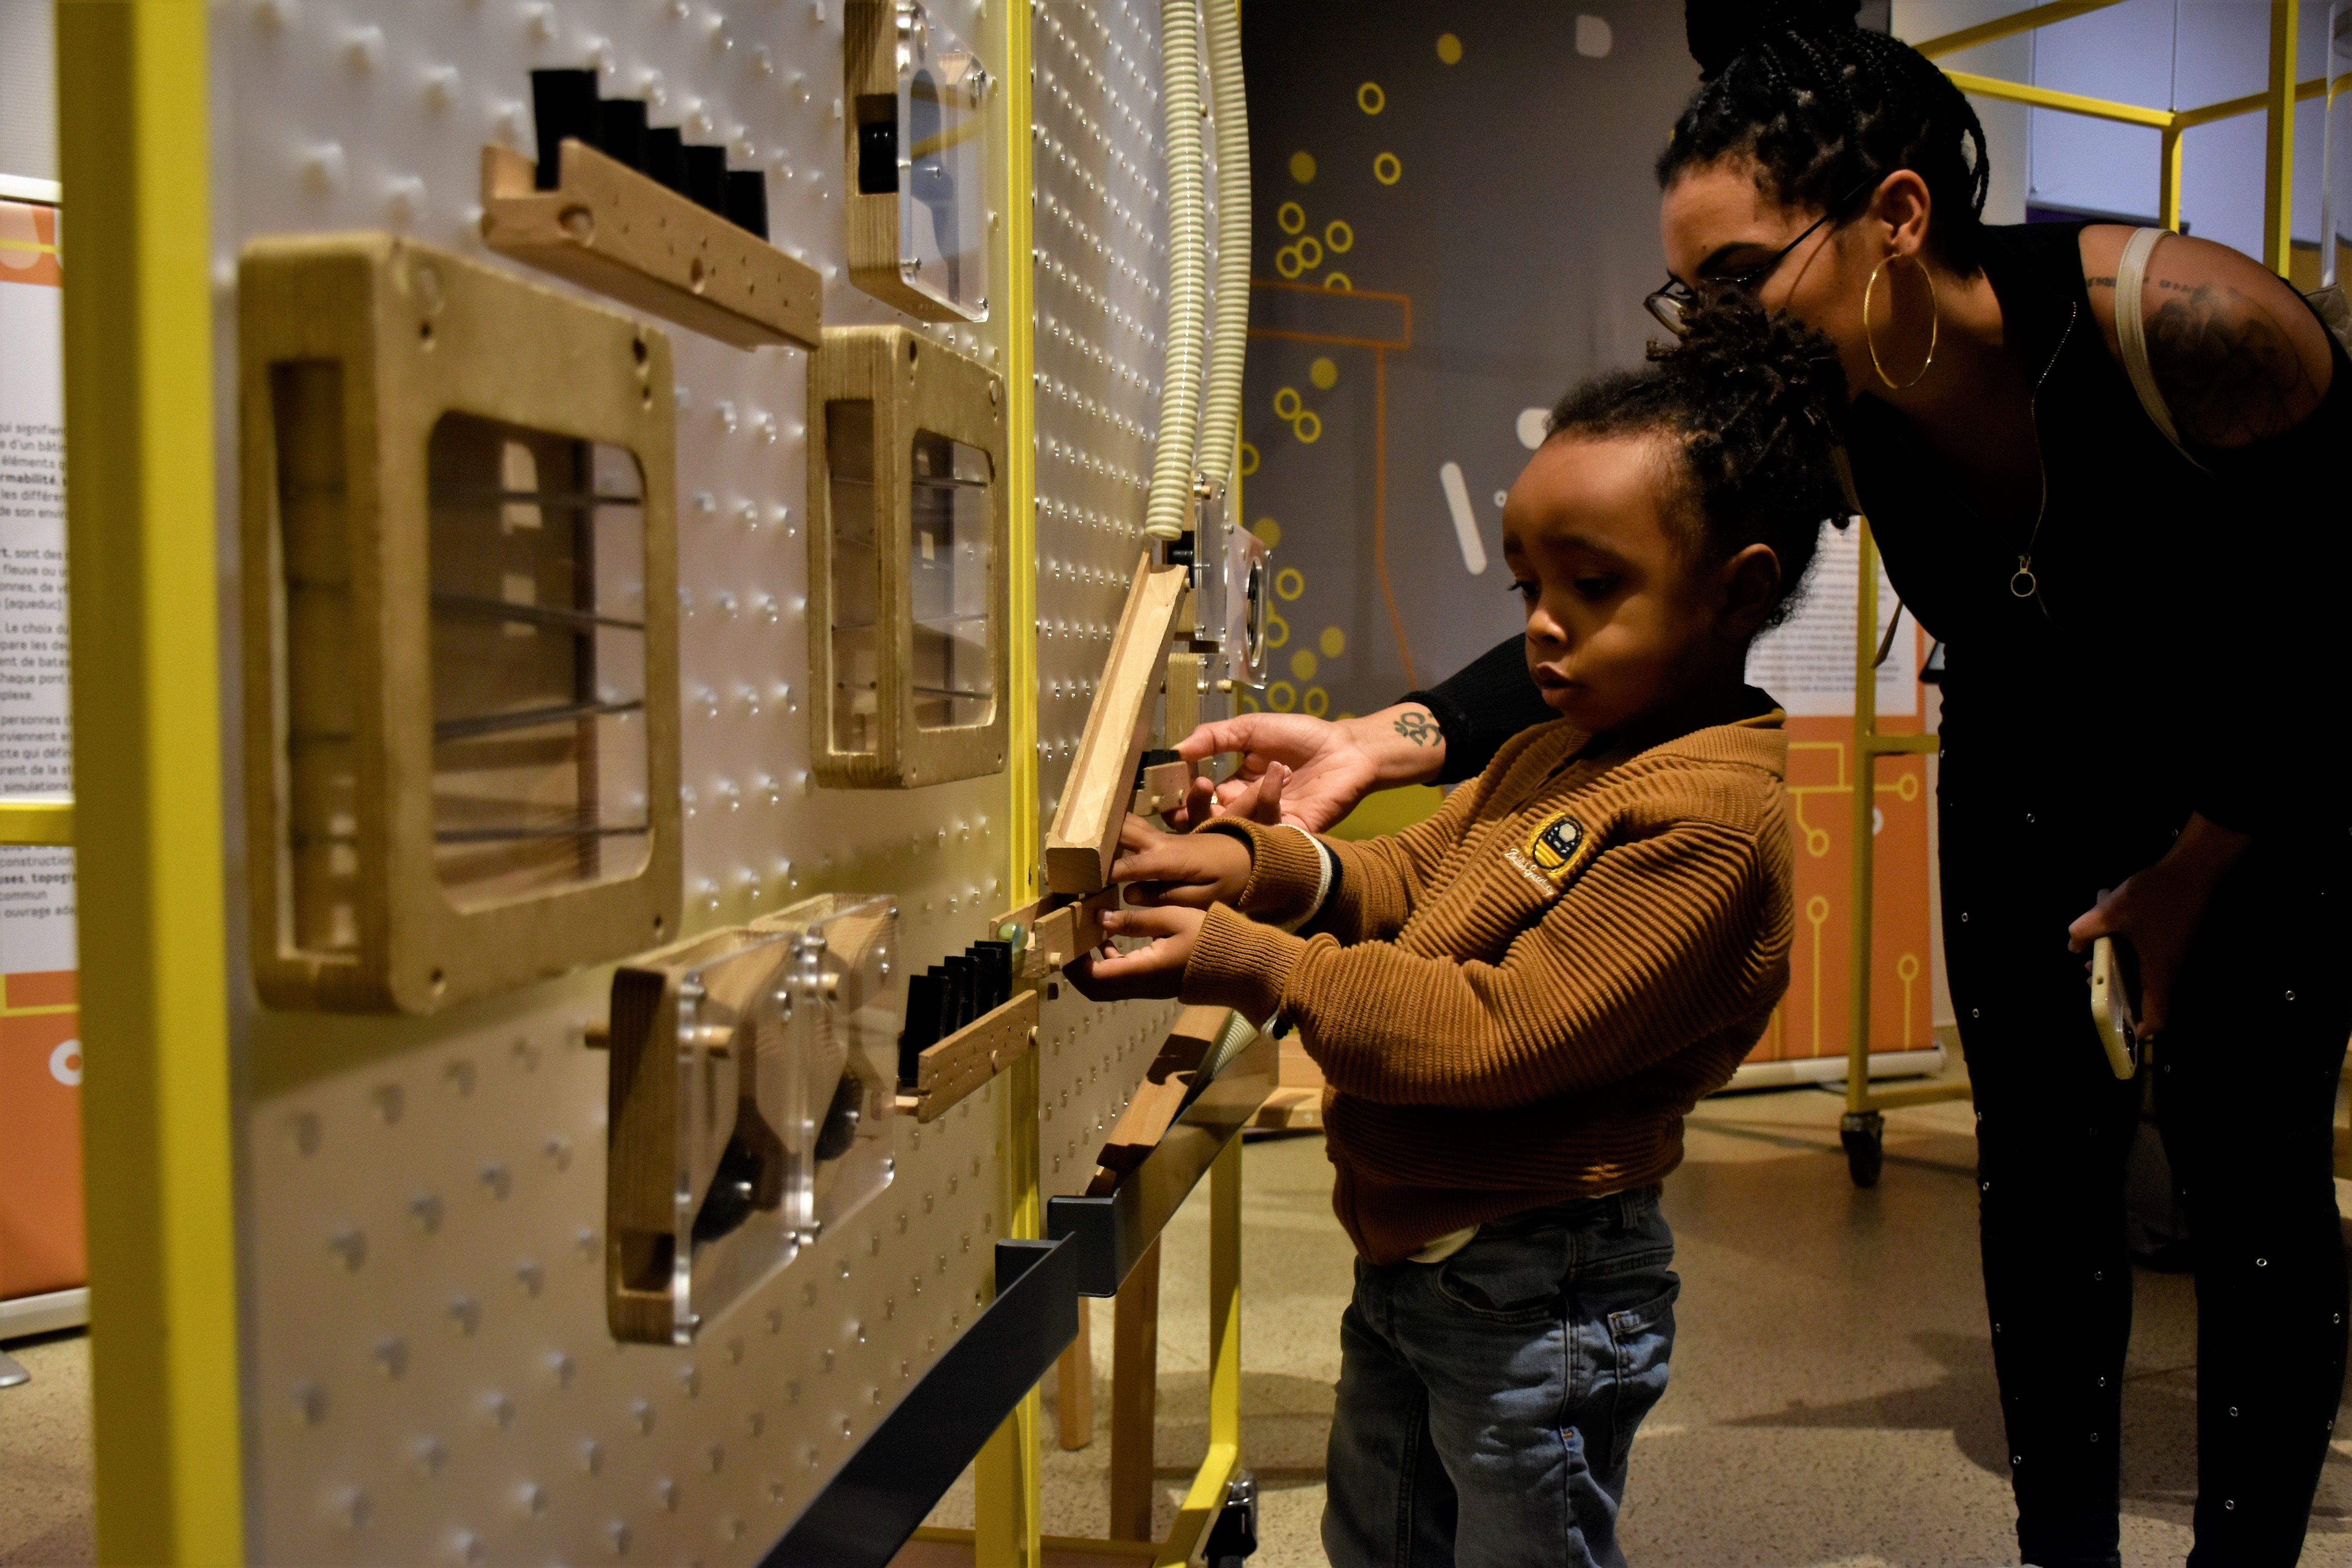 Vitry-sur-Seine, le 28 octobre 2022. Swann, 4 ans, visite l'exposition Fabriq'Expo avec sa mère Gwenaël au musée de l'Exploradôme. LP/William Minh Hào Nguyen